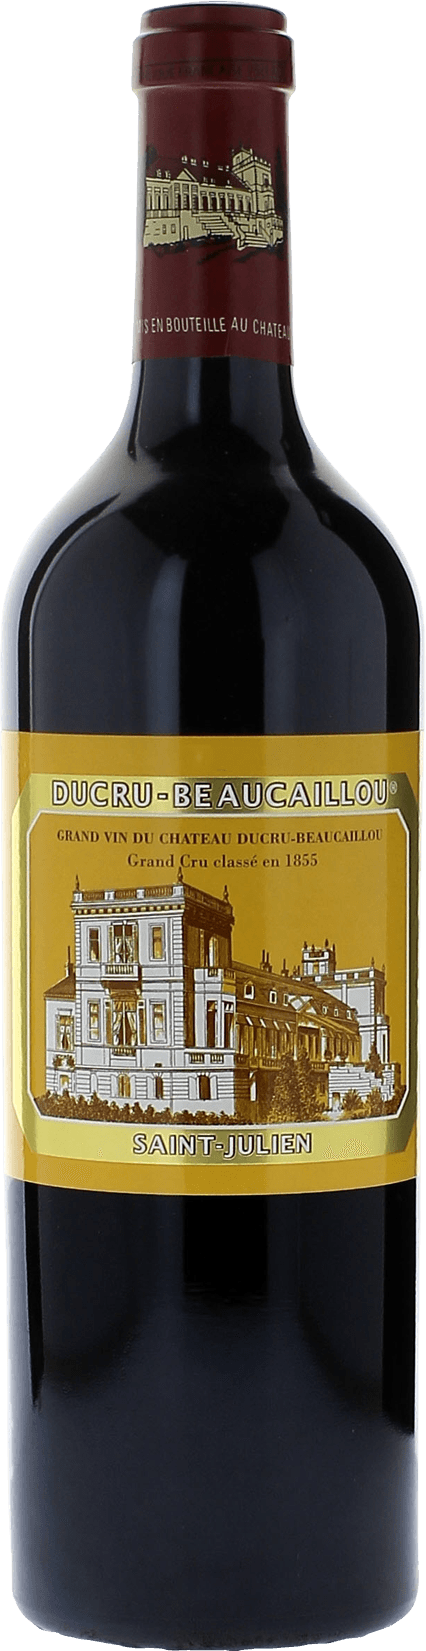 Ducru beaucaillou 1938 2me Grand cru class Saint-Julien, Bordeaux rouge